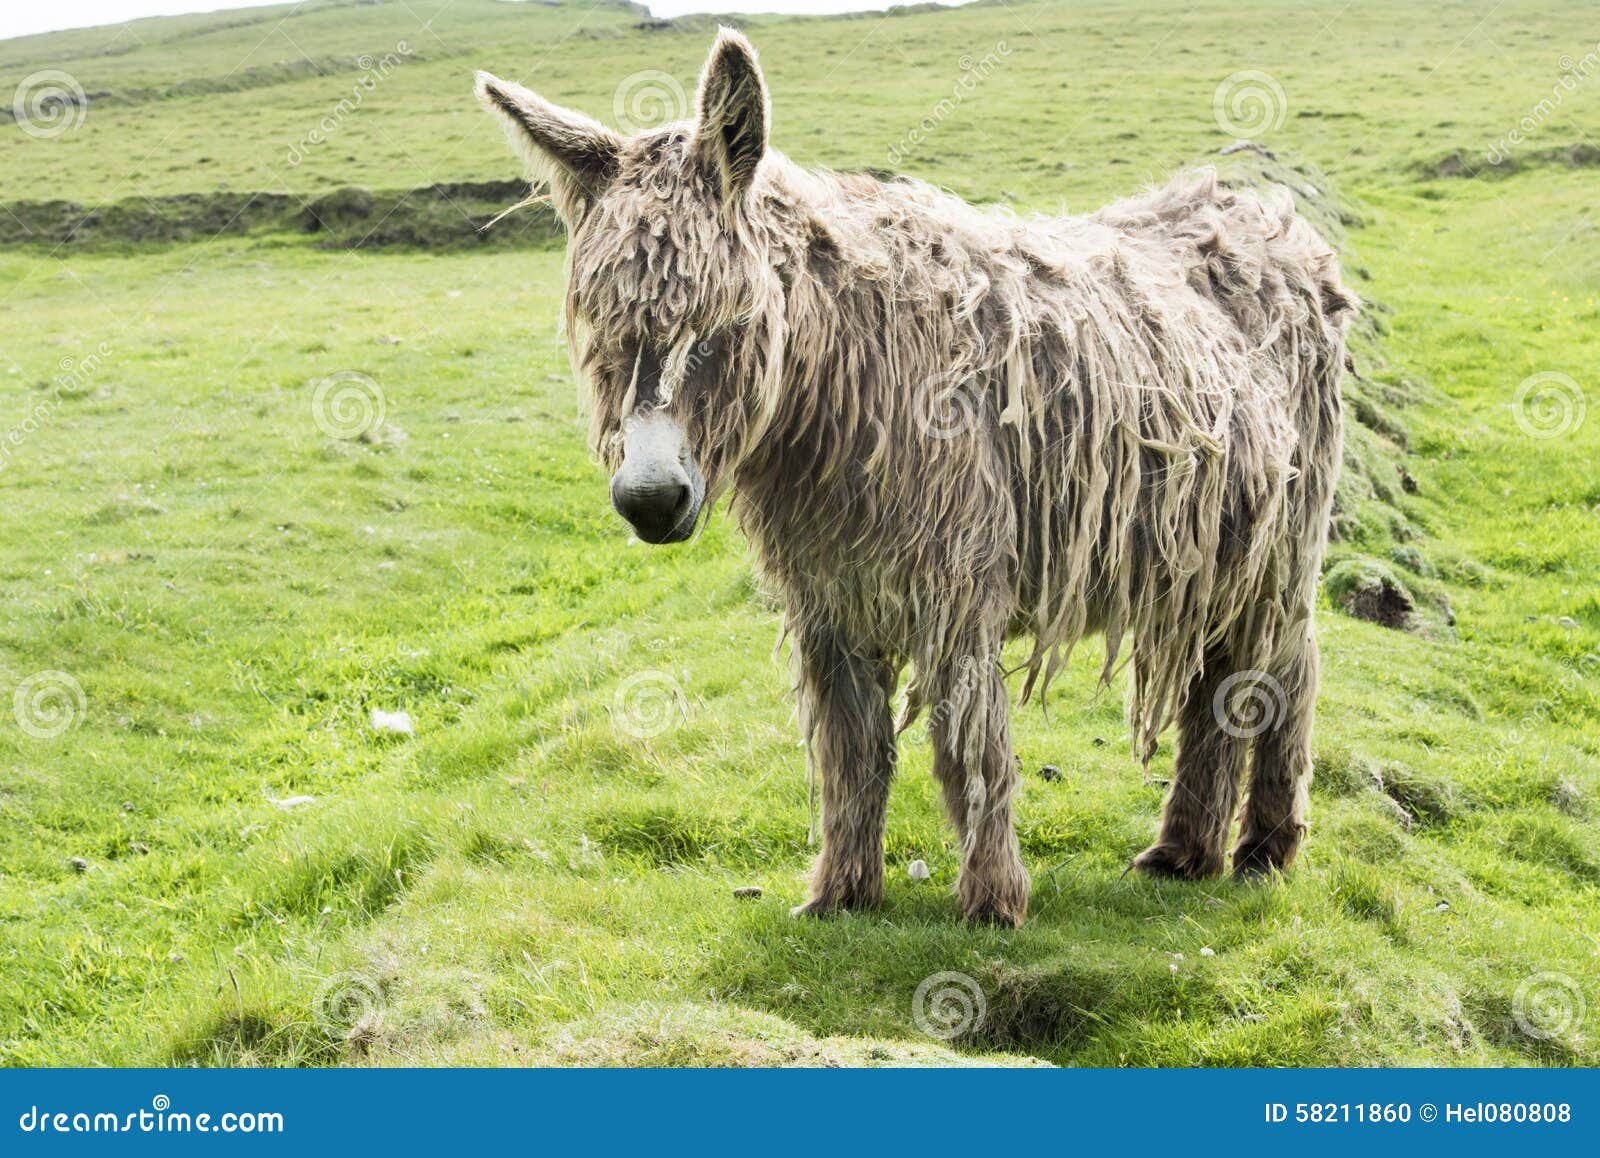 shaggy donkey on abandoned ground in ireland